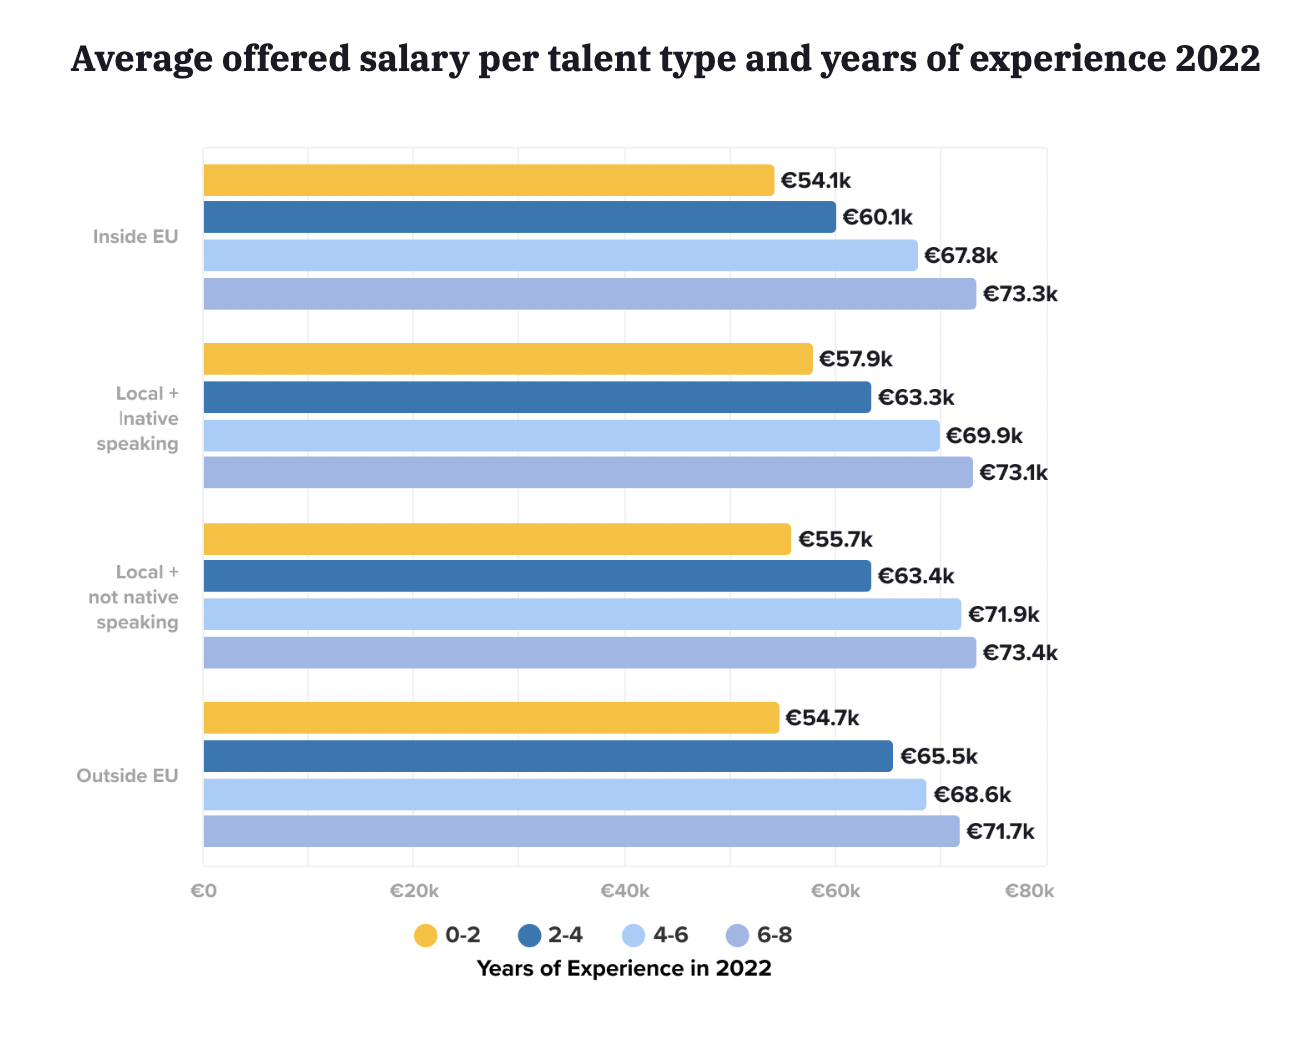 Salario promedio ofrecido por tipo de talento y años de experiencia en Alemania en 2022 